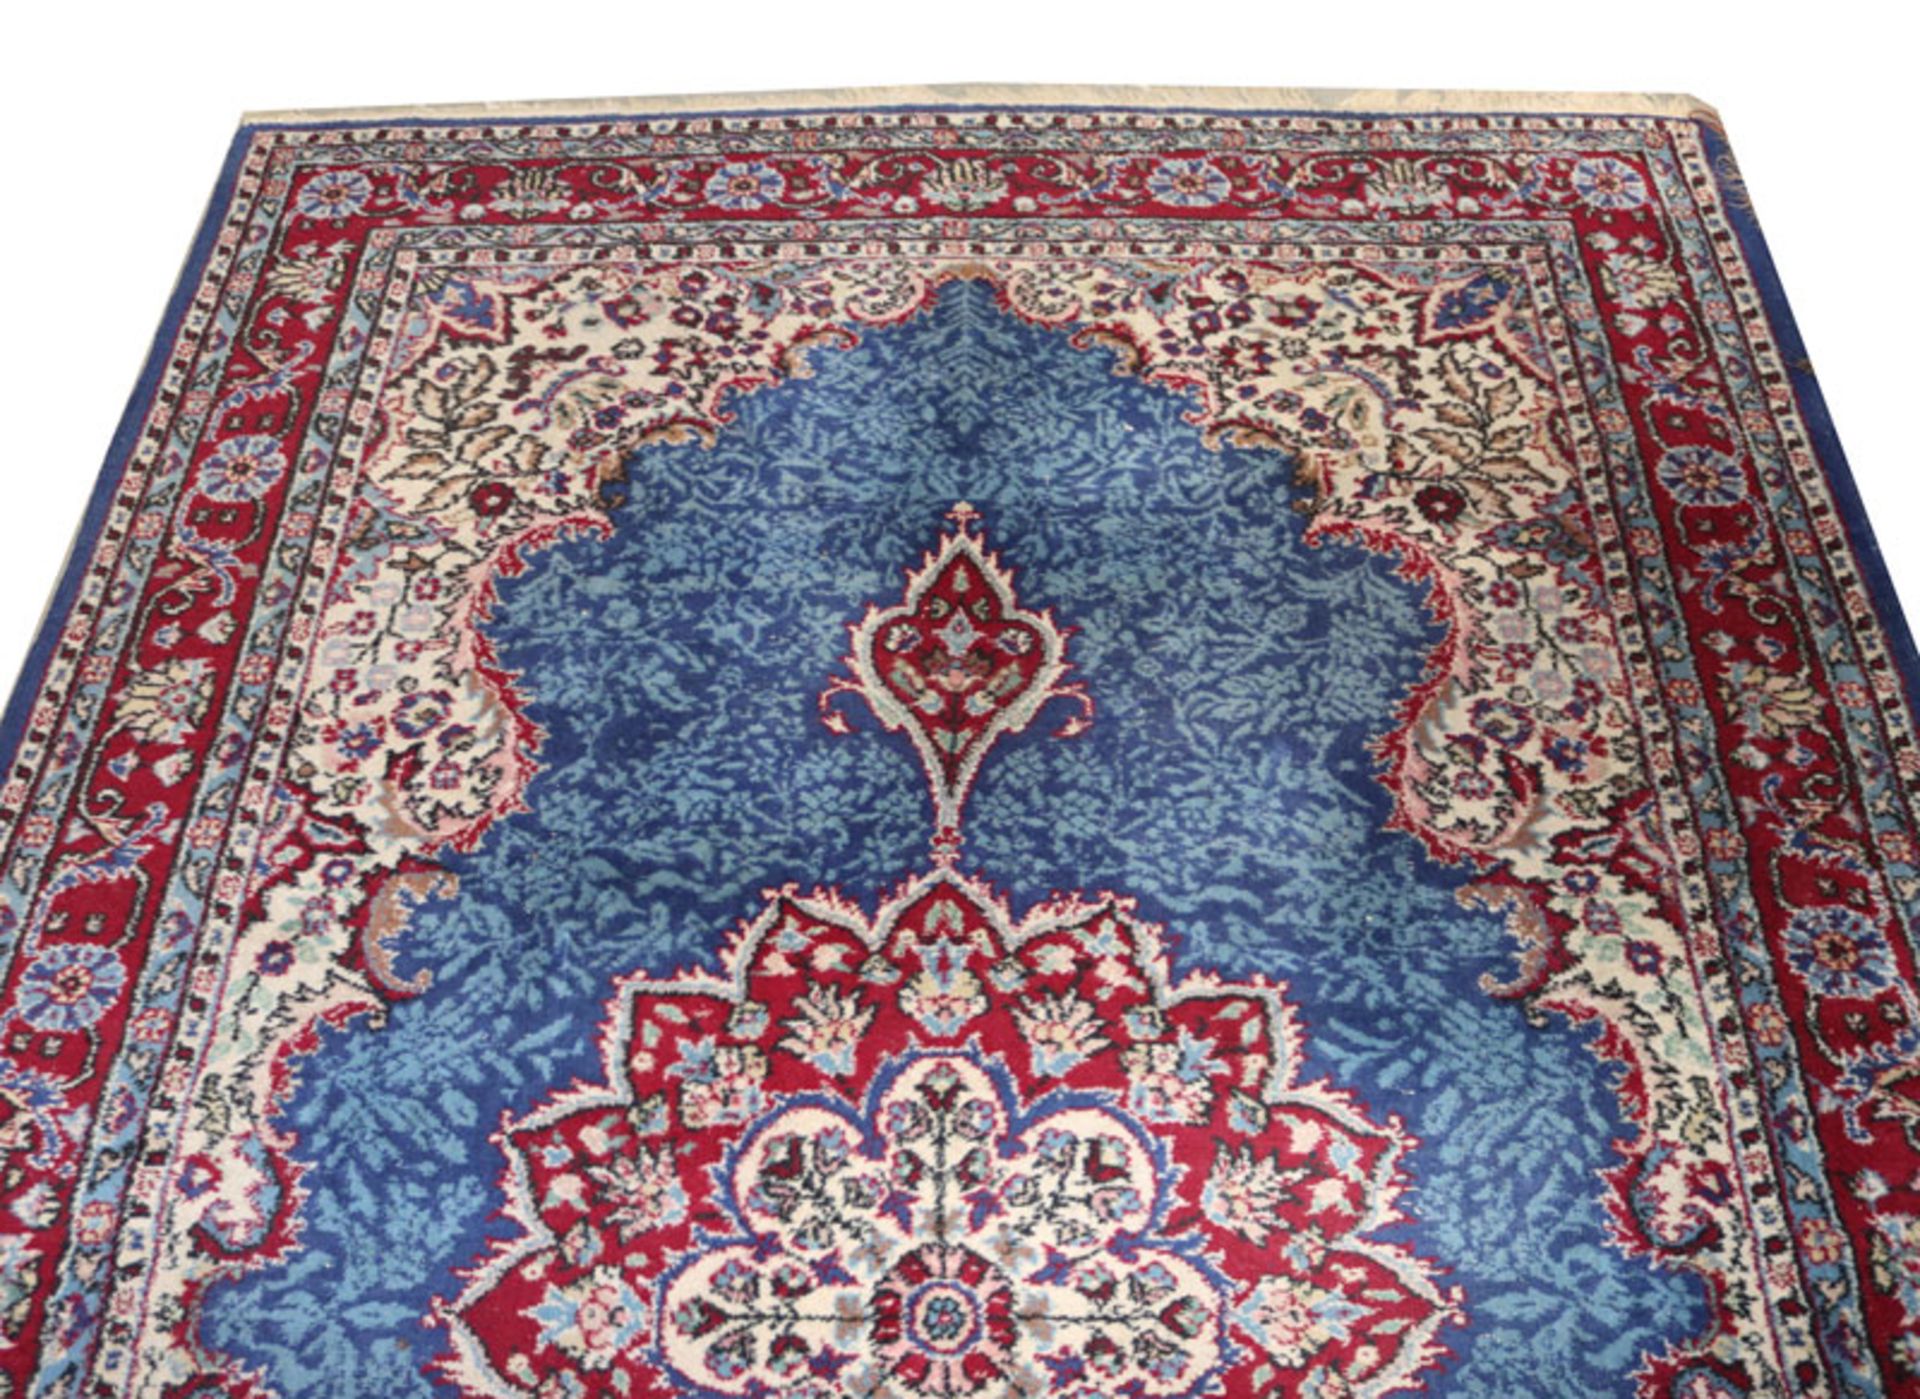 Teppich, blau/beige/rot/bunt, Gebrauchsspuren, Fransen teils beschädigt, 337 cm x 218 cm